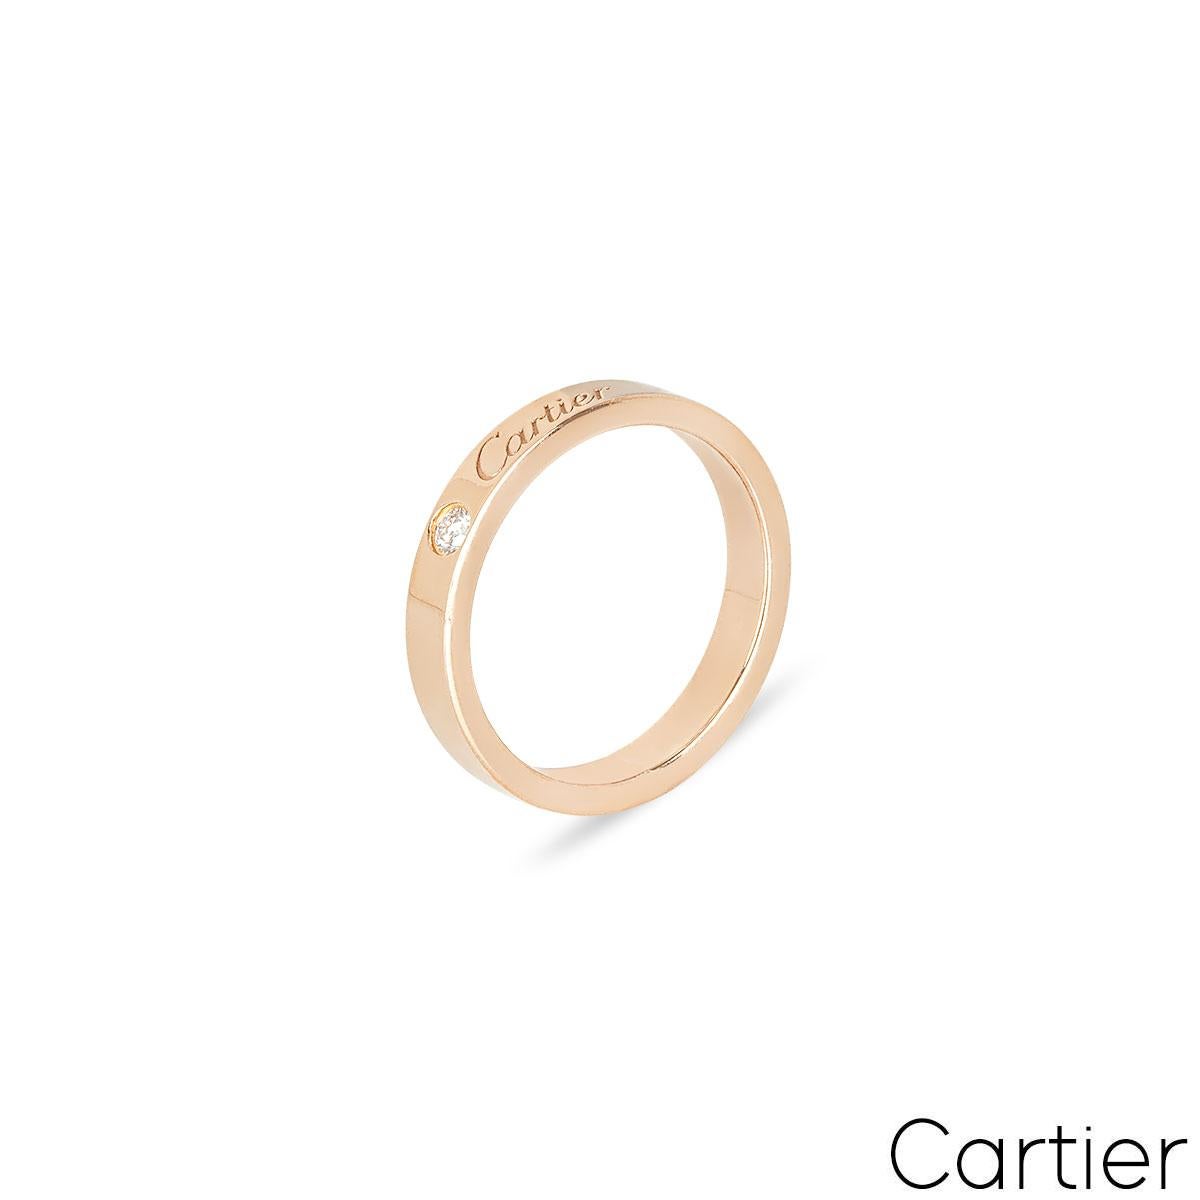 Ein Ehering aus 18 Karat Roségold aus der Kollektion C de Cartier von Cartier. Der Ring ist mit einem einzelnen Diamanten im Brillantschliff (0,03 ct) besetzt, der durch die Signatur von Cartier ergänzt wird. Der Ehering ist 3 mm breit, hat die